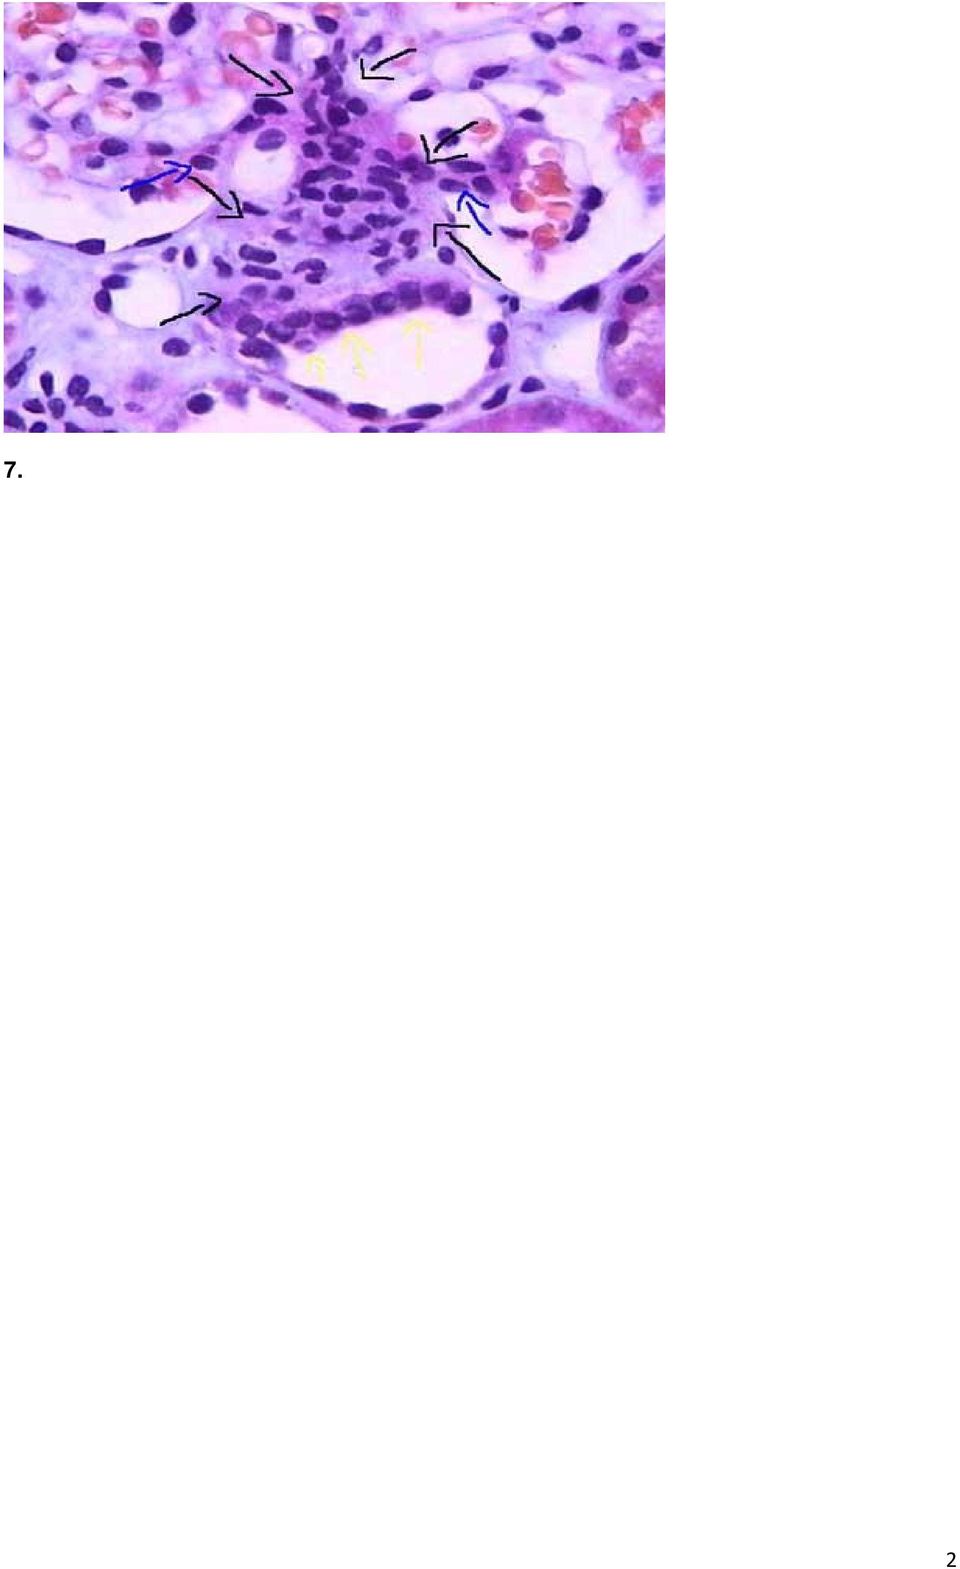 διαφορική διάγνωση (σε πτωματική μεταμόσχευση) μεταξύ οξείας σωληναριακής νέκρωσης και άλλων αιτίων πρώιμης δυσλειτουργίας του μοσχεύματος Γ.